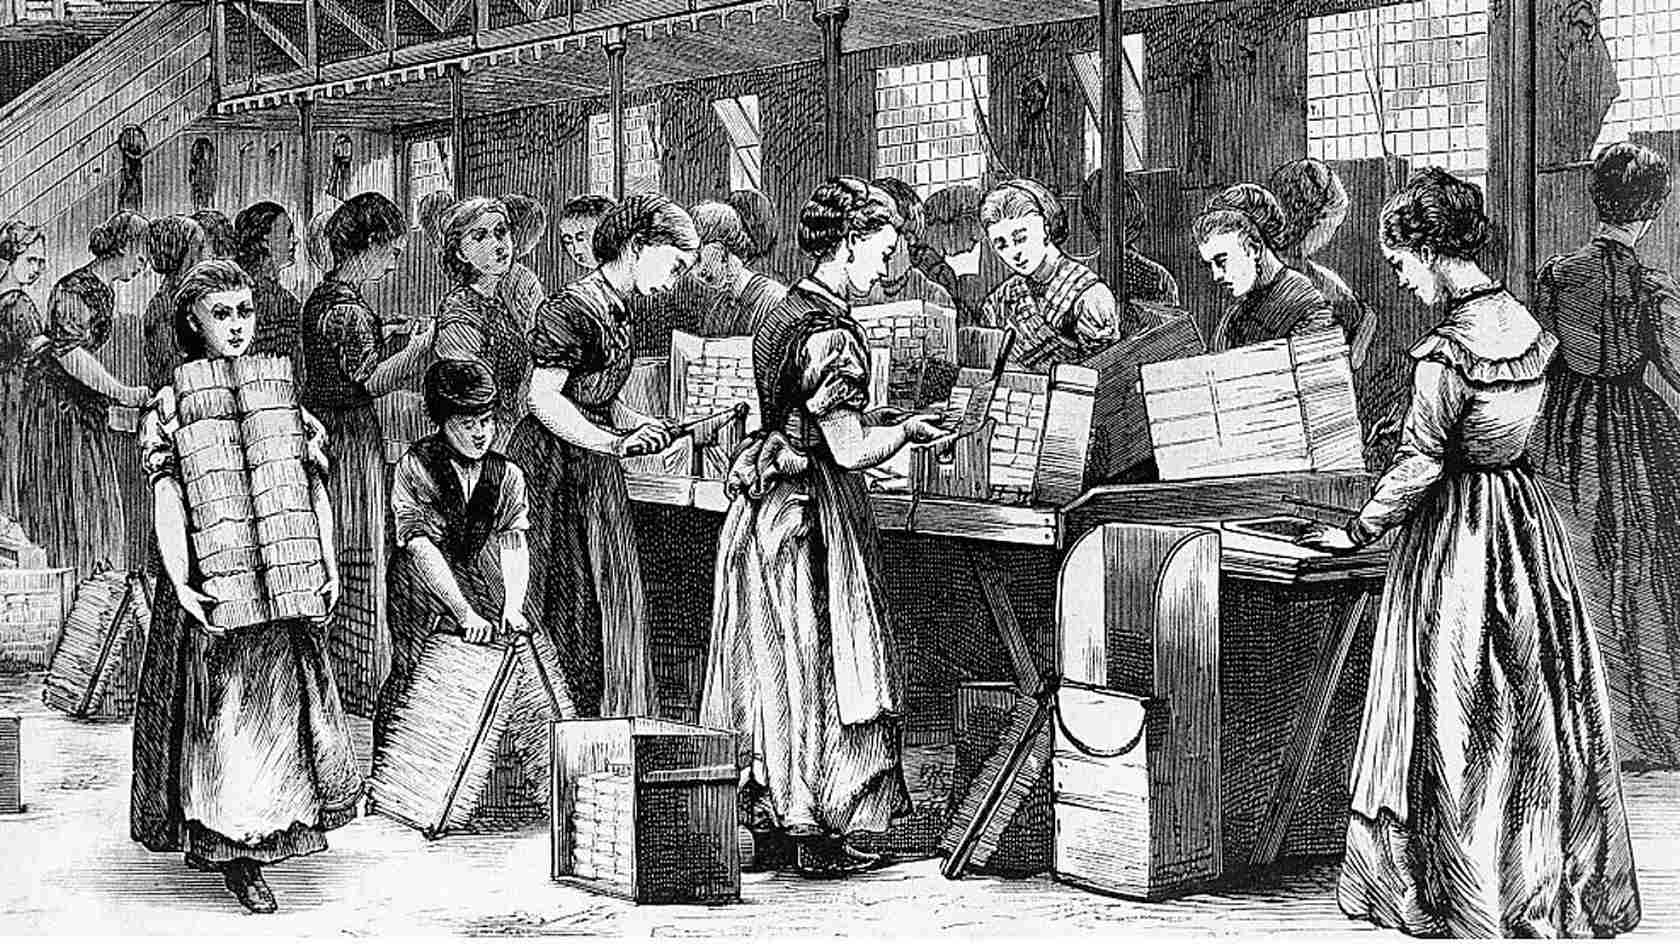 Фабричное право. Работницы на ткацкой фабрике 19 век Англия. Англия дома работников фабрик 18 века. Английские рабочие начала 20 века. Англия забастовка на спичечной фабрике.